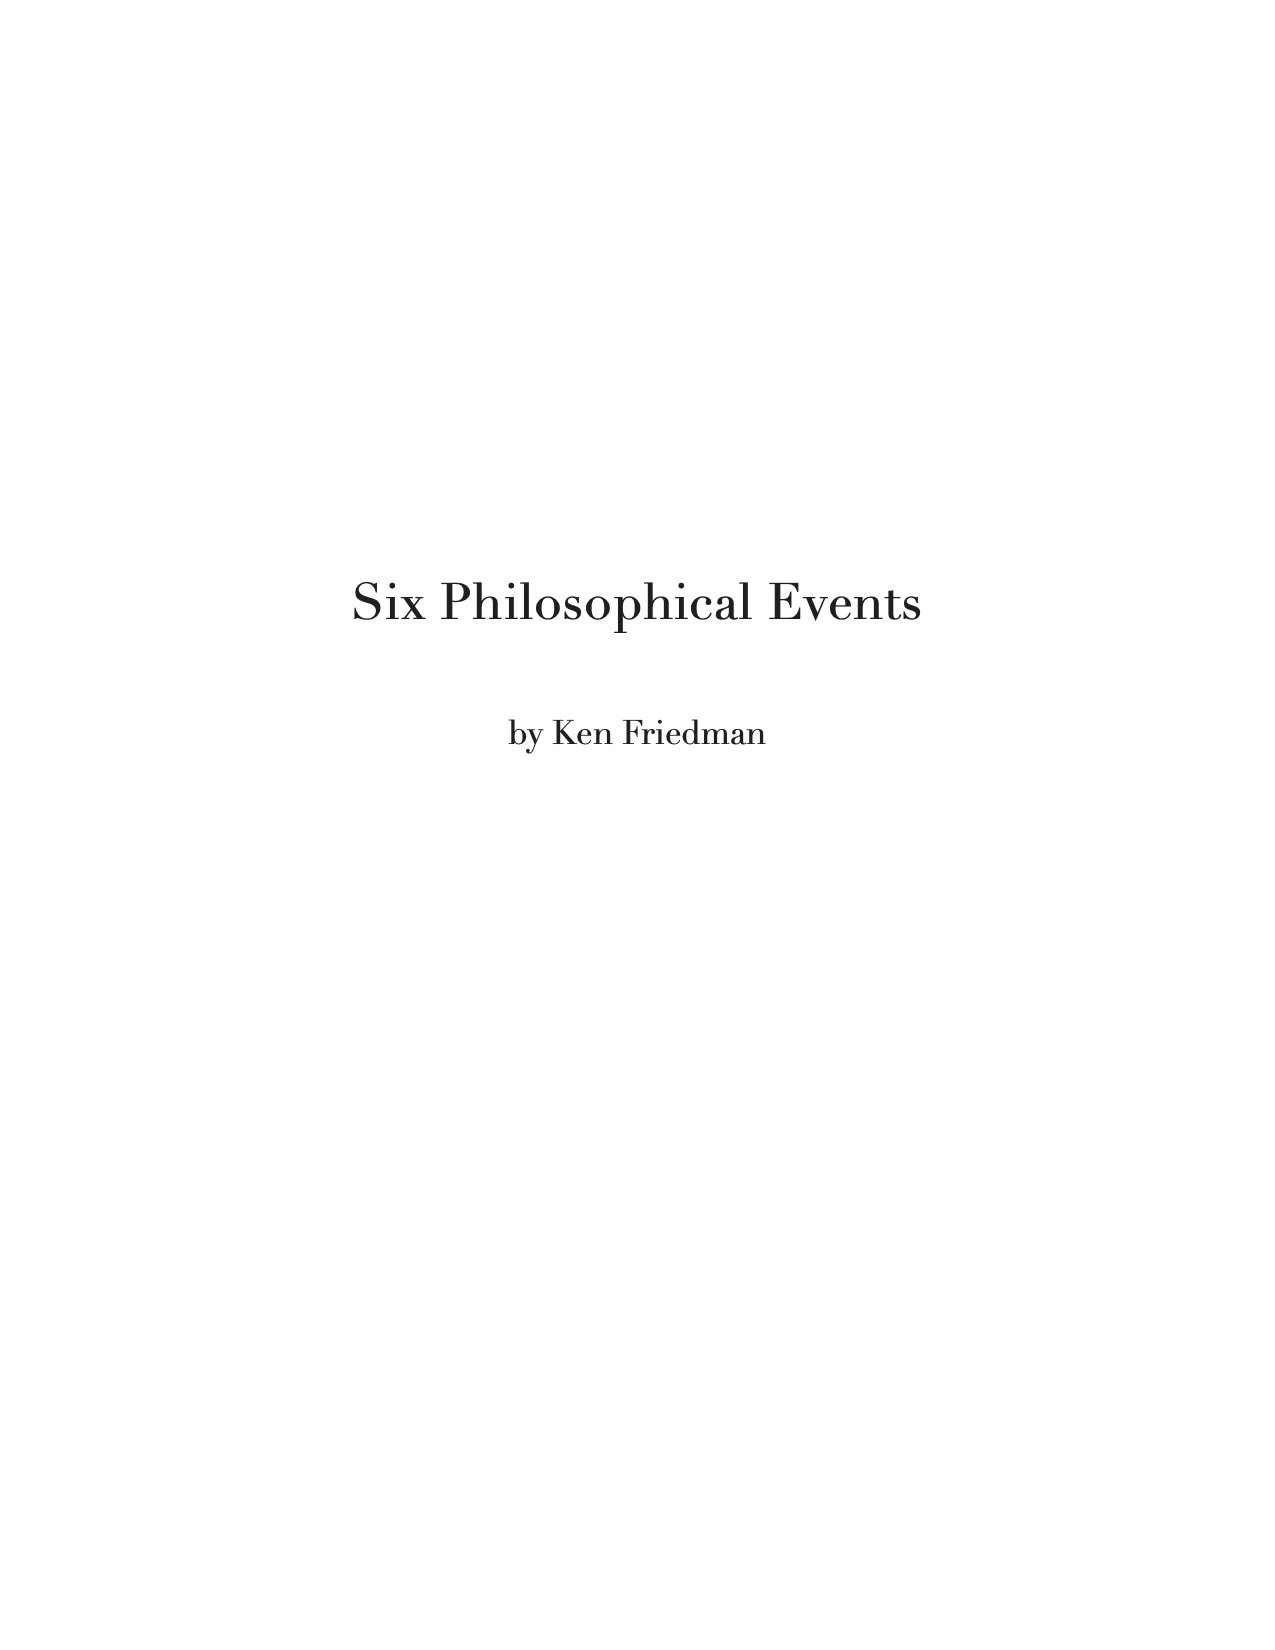 Ken Friedman 2021 Six Philosophical Events02.jpg